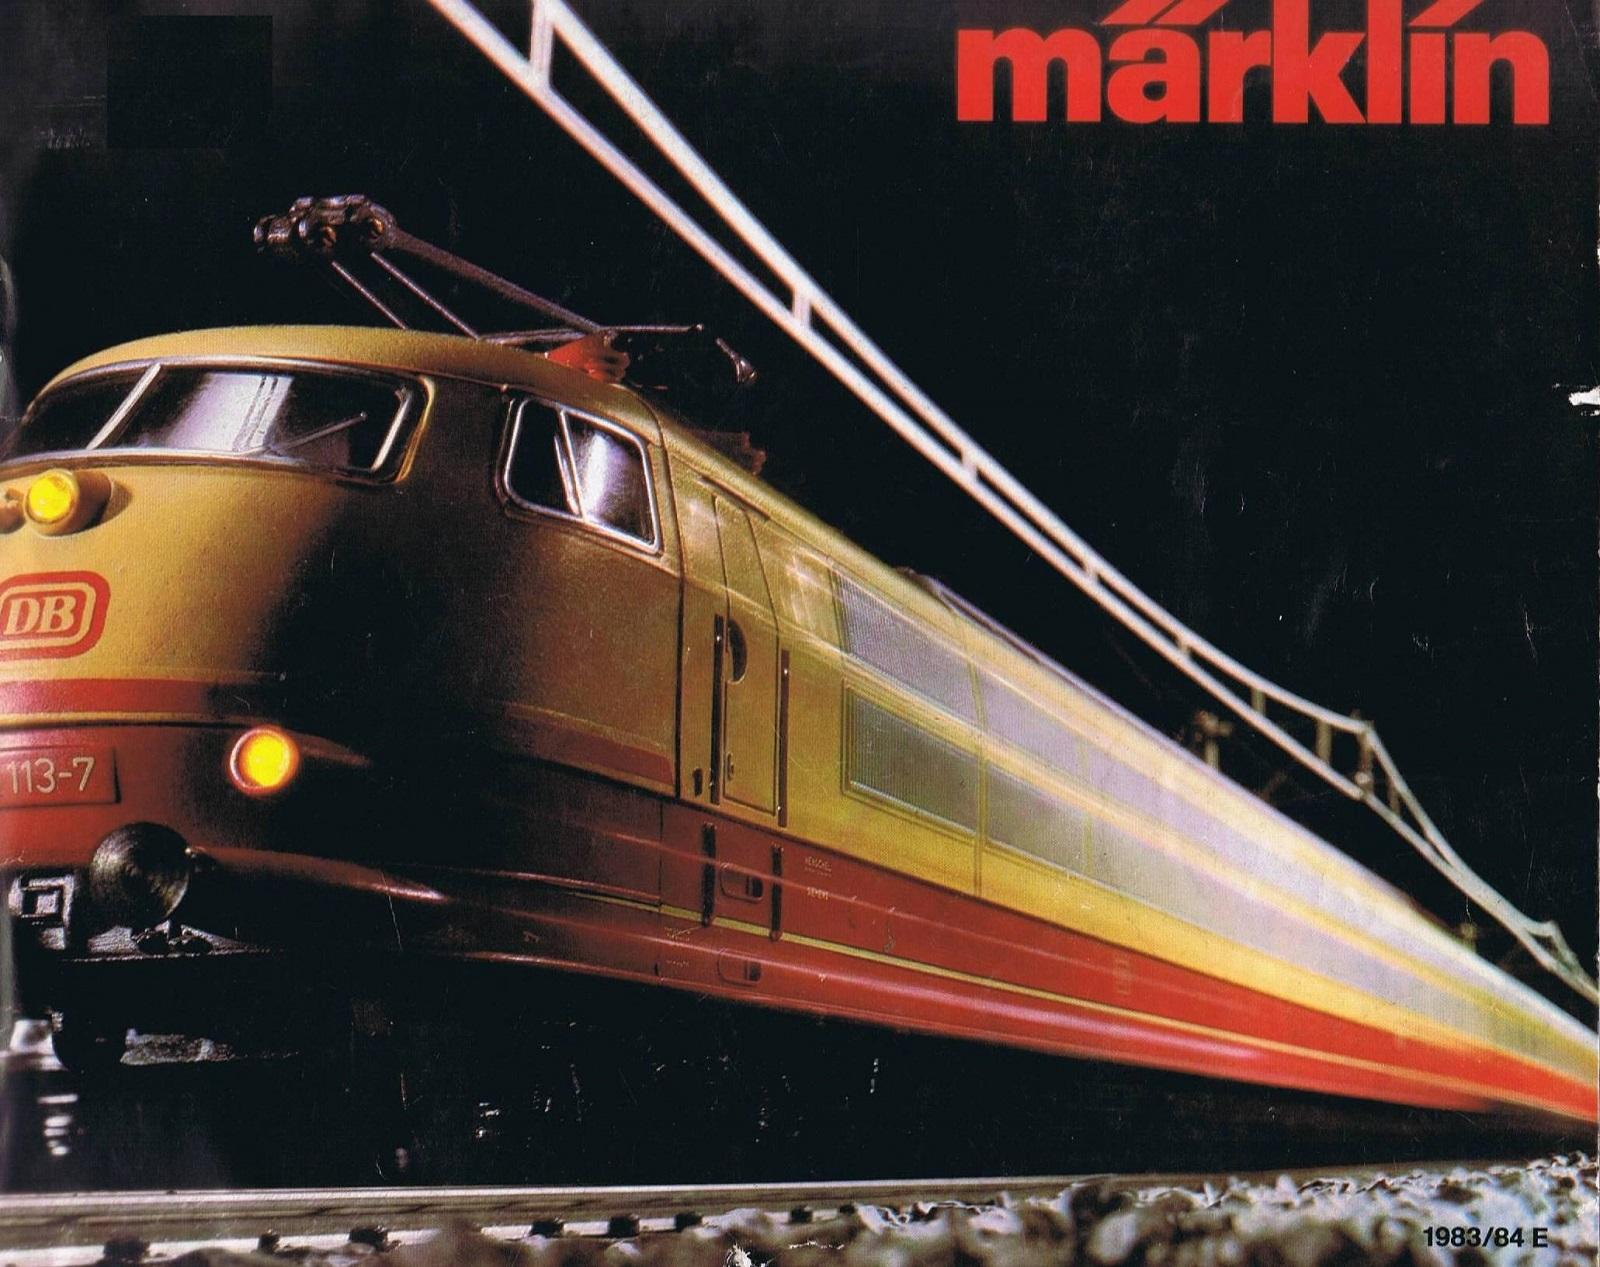 New Catalog 168 Pages 1983/84 E Marklin Trains Catalog 